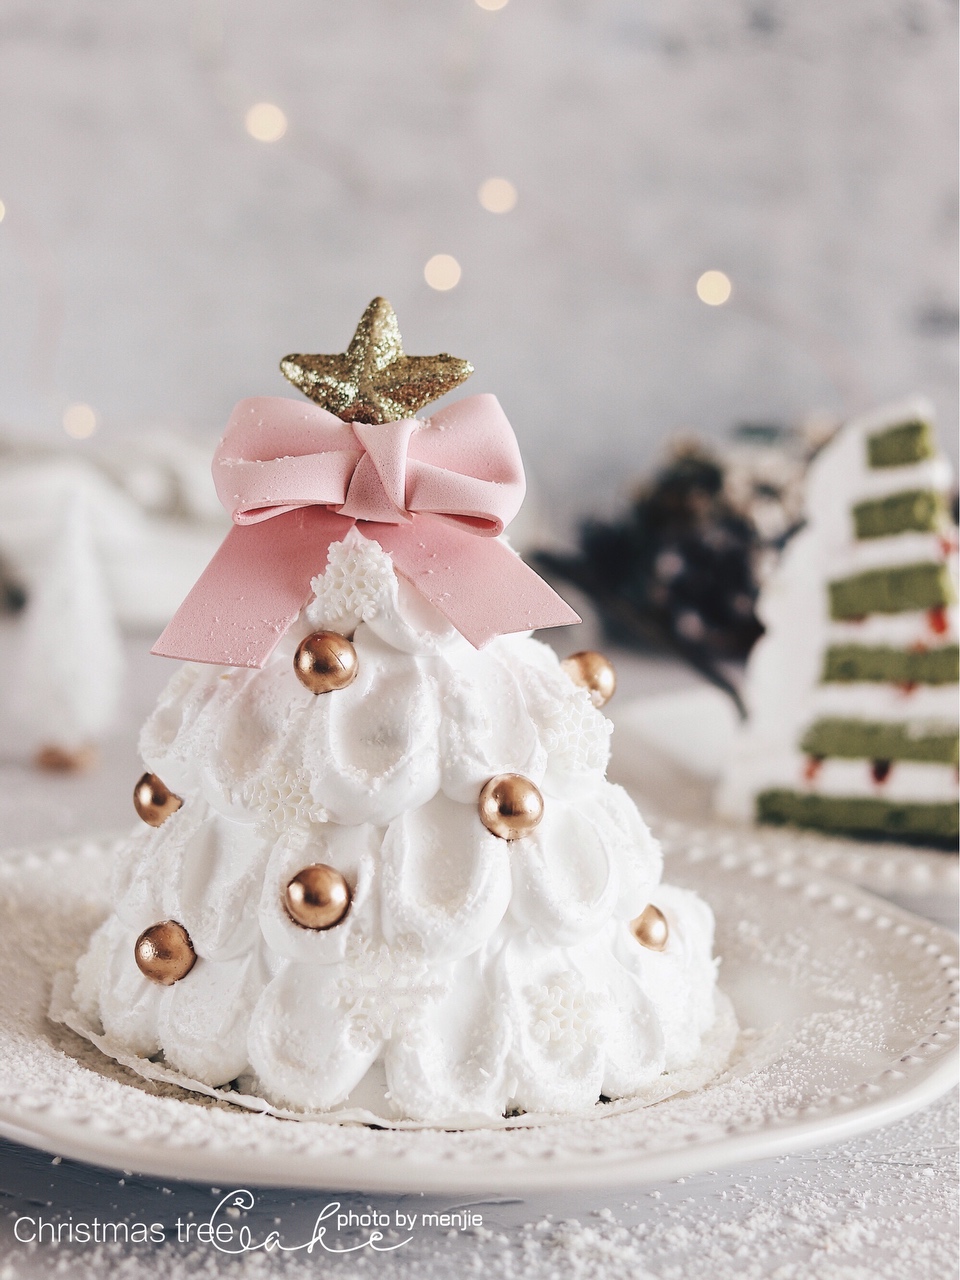 可以吃的圣诞树🎄圣诞节蛋糕甜品的做法